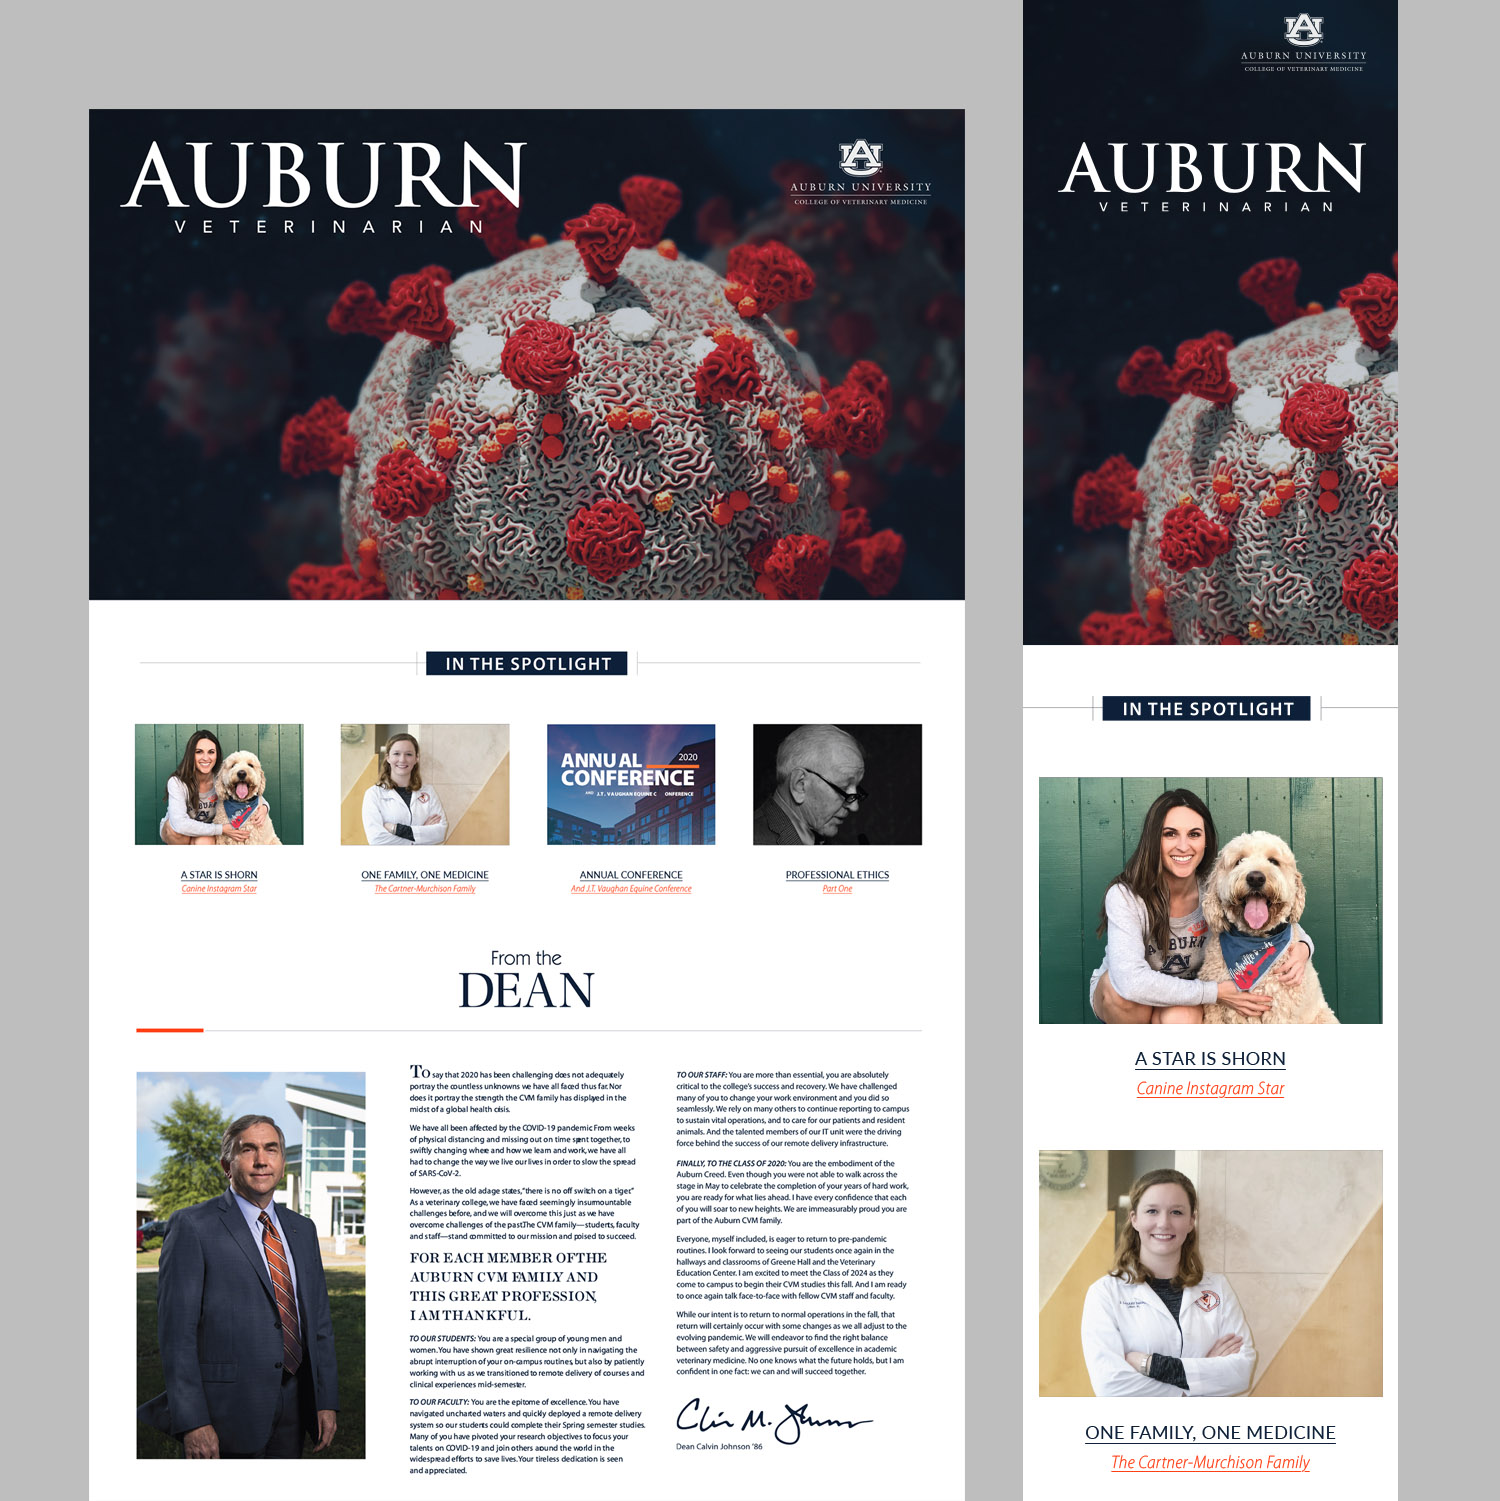 Website for Auburn Veterinary School